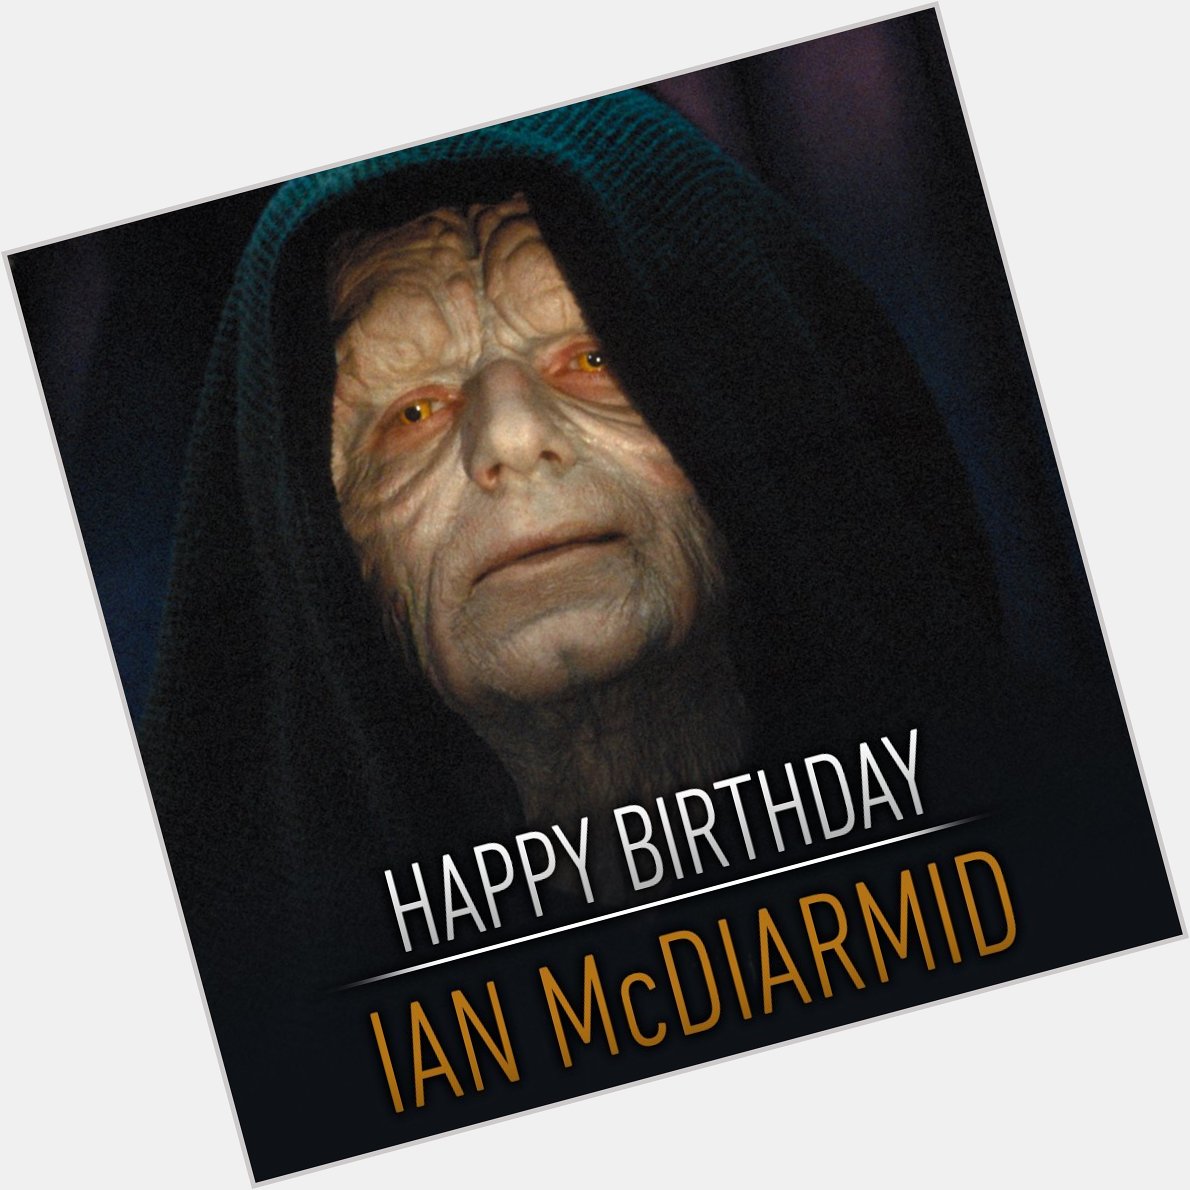 Happy Birthday an den Mann, der den Imperator zum Leben erweckte. Alles Gute, Ian McDiarmid. 